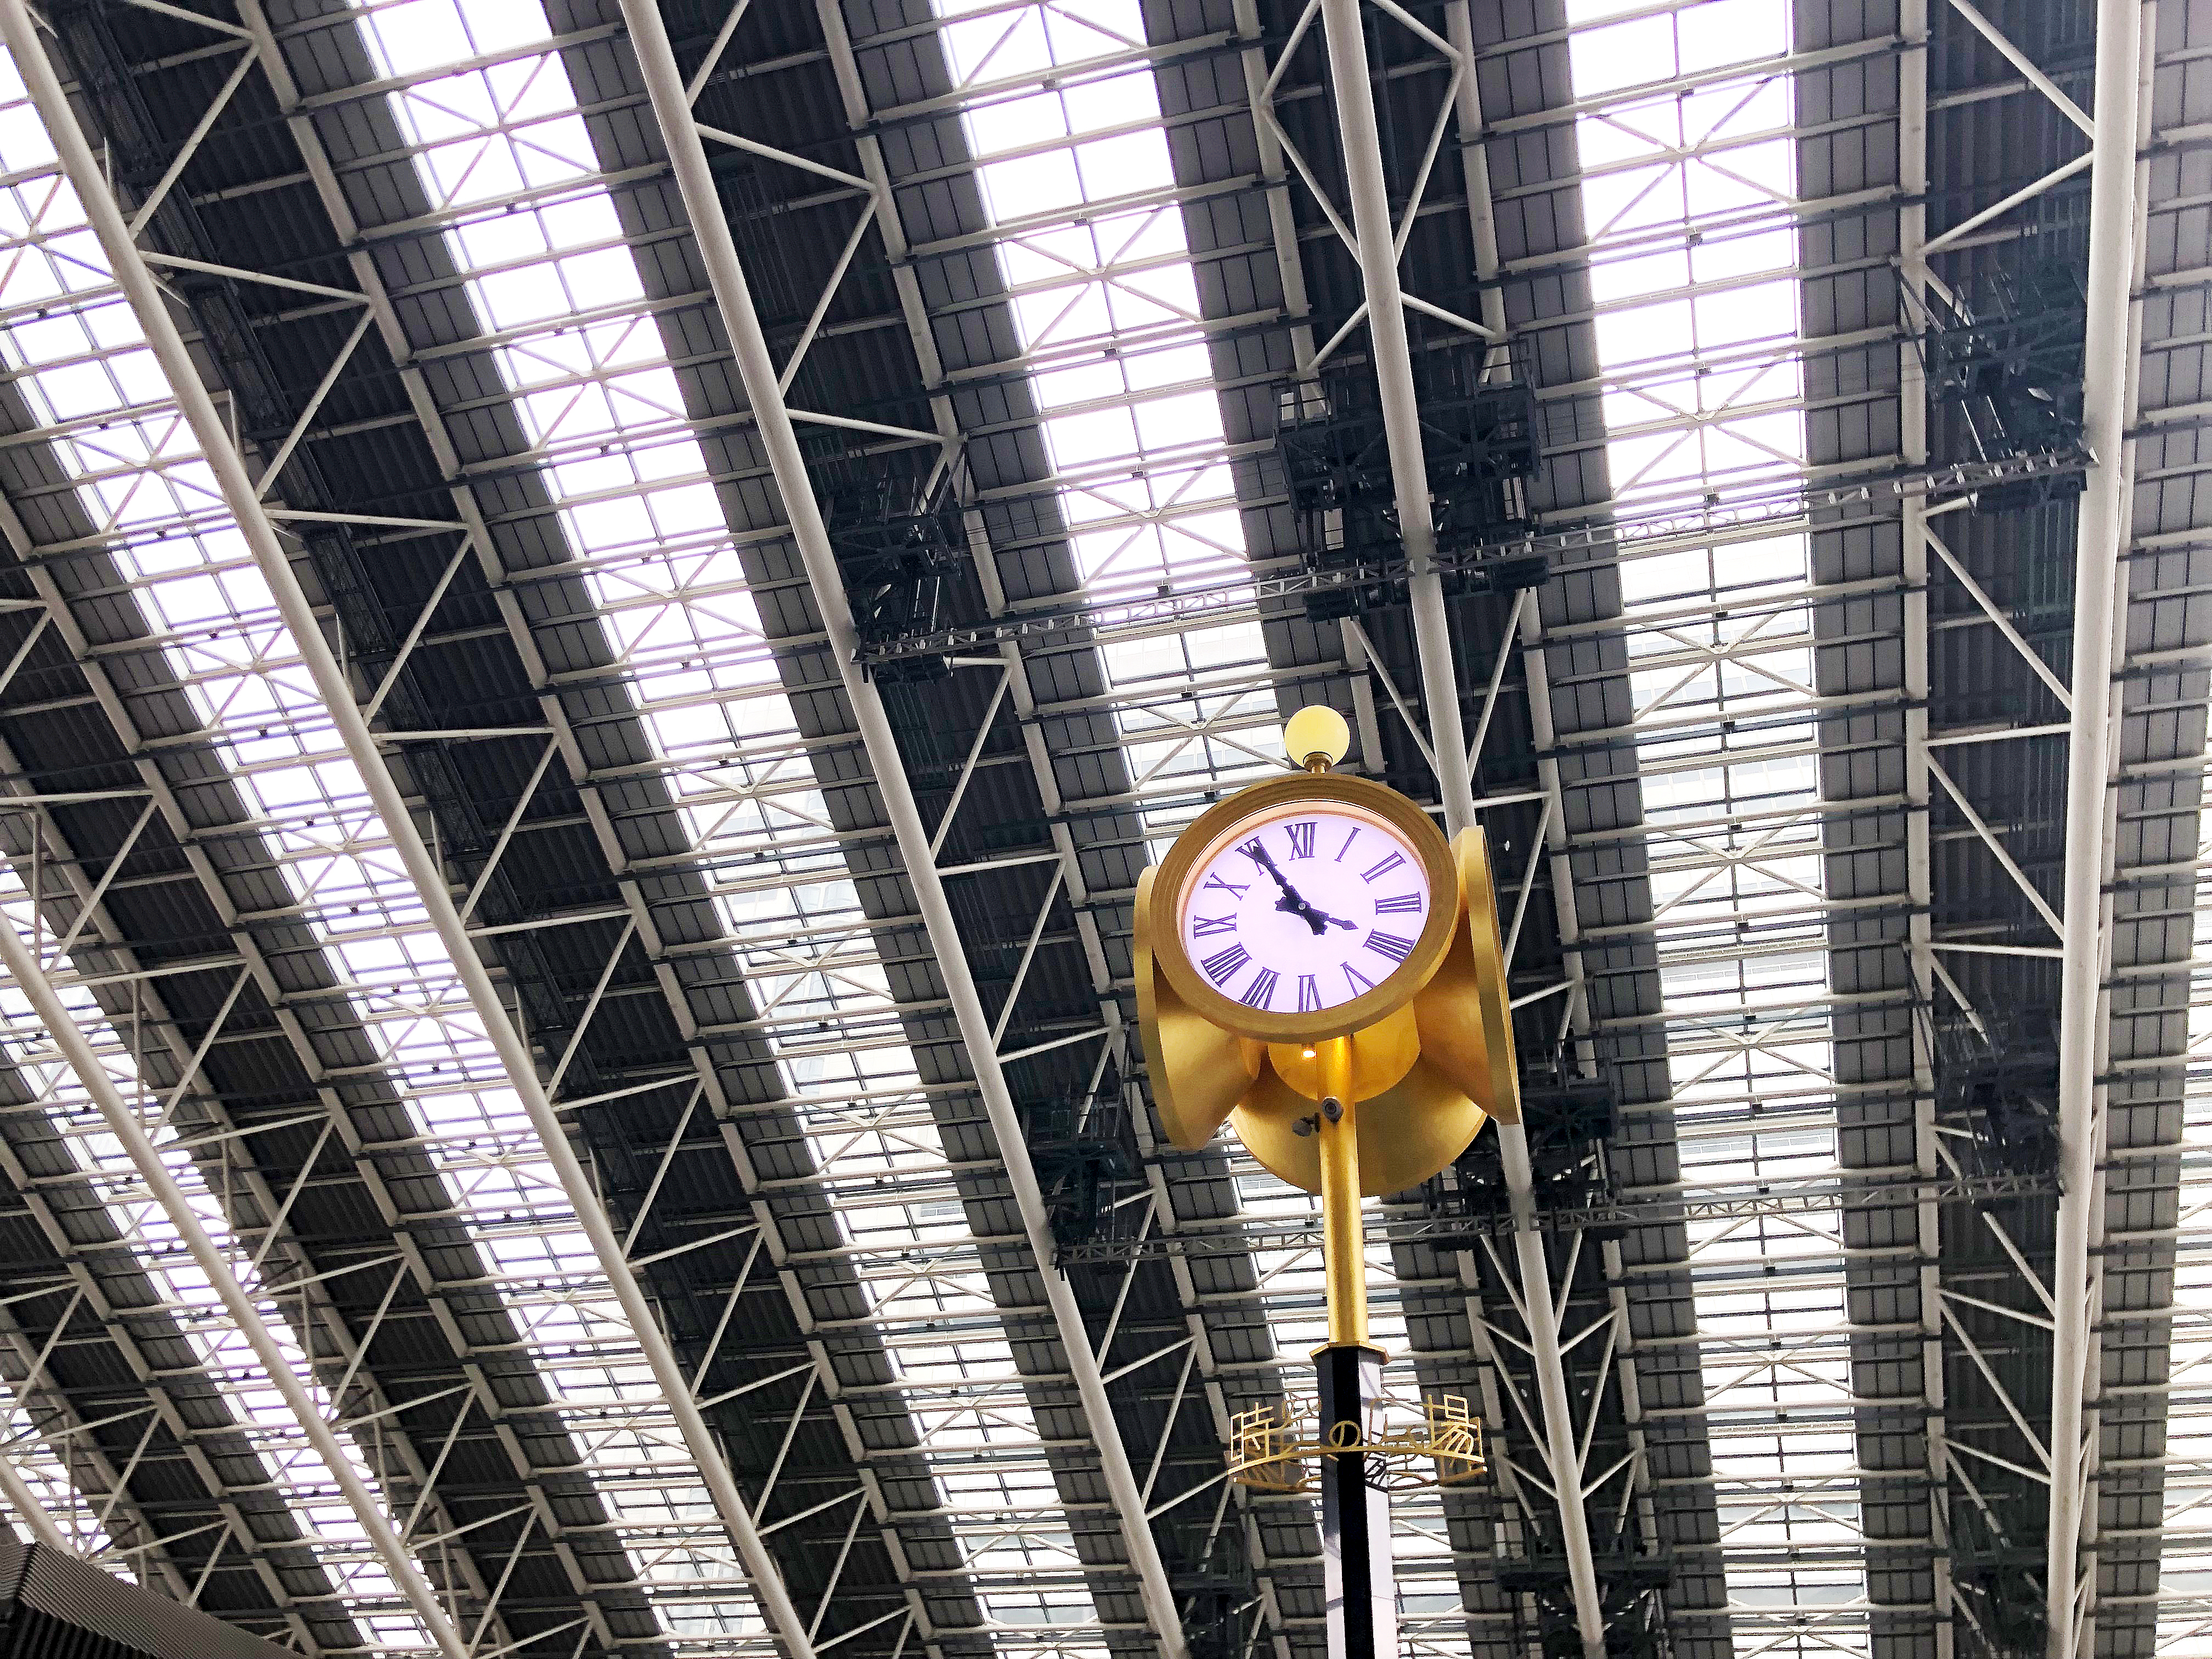 夜の大阪駅時空 とき の広場の天井 3 無料写真 フリー素材のダウンロードサイト もある